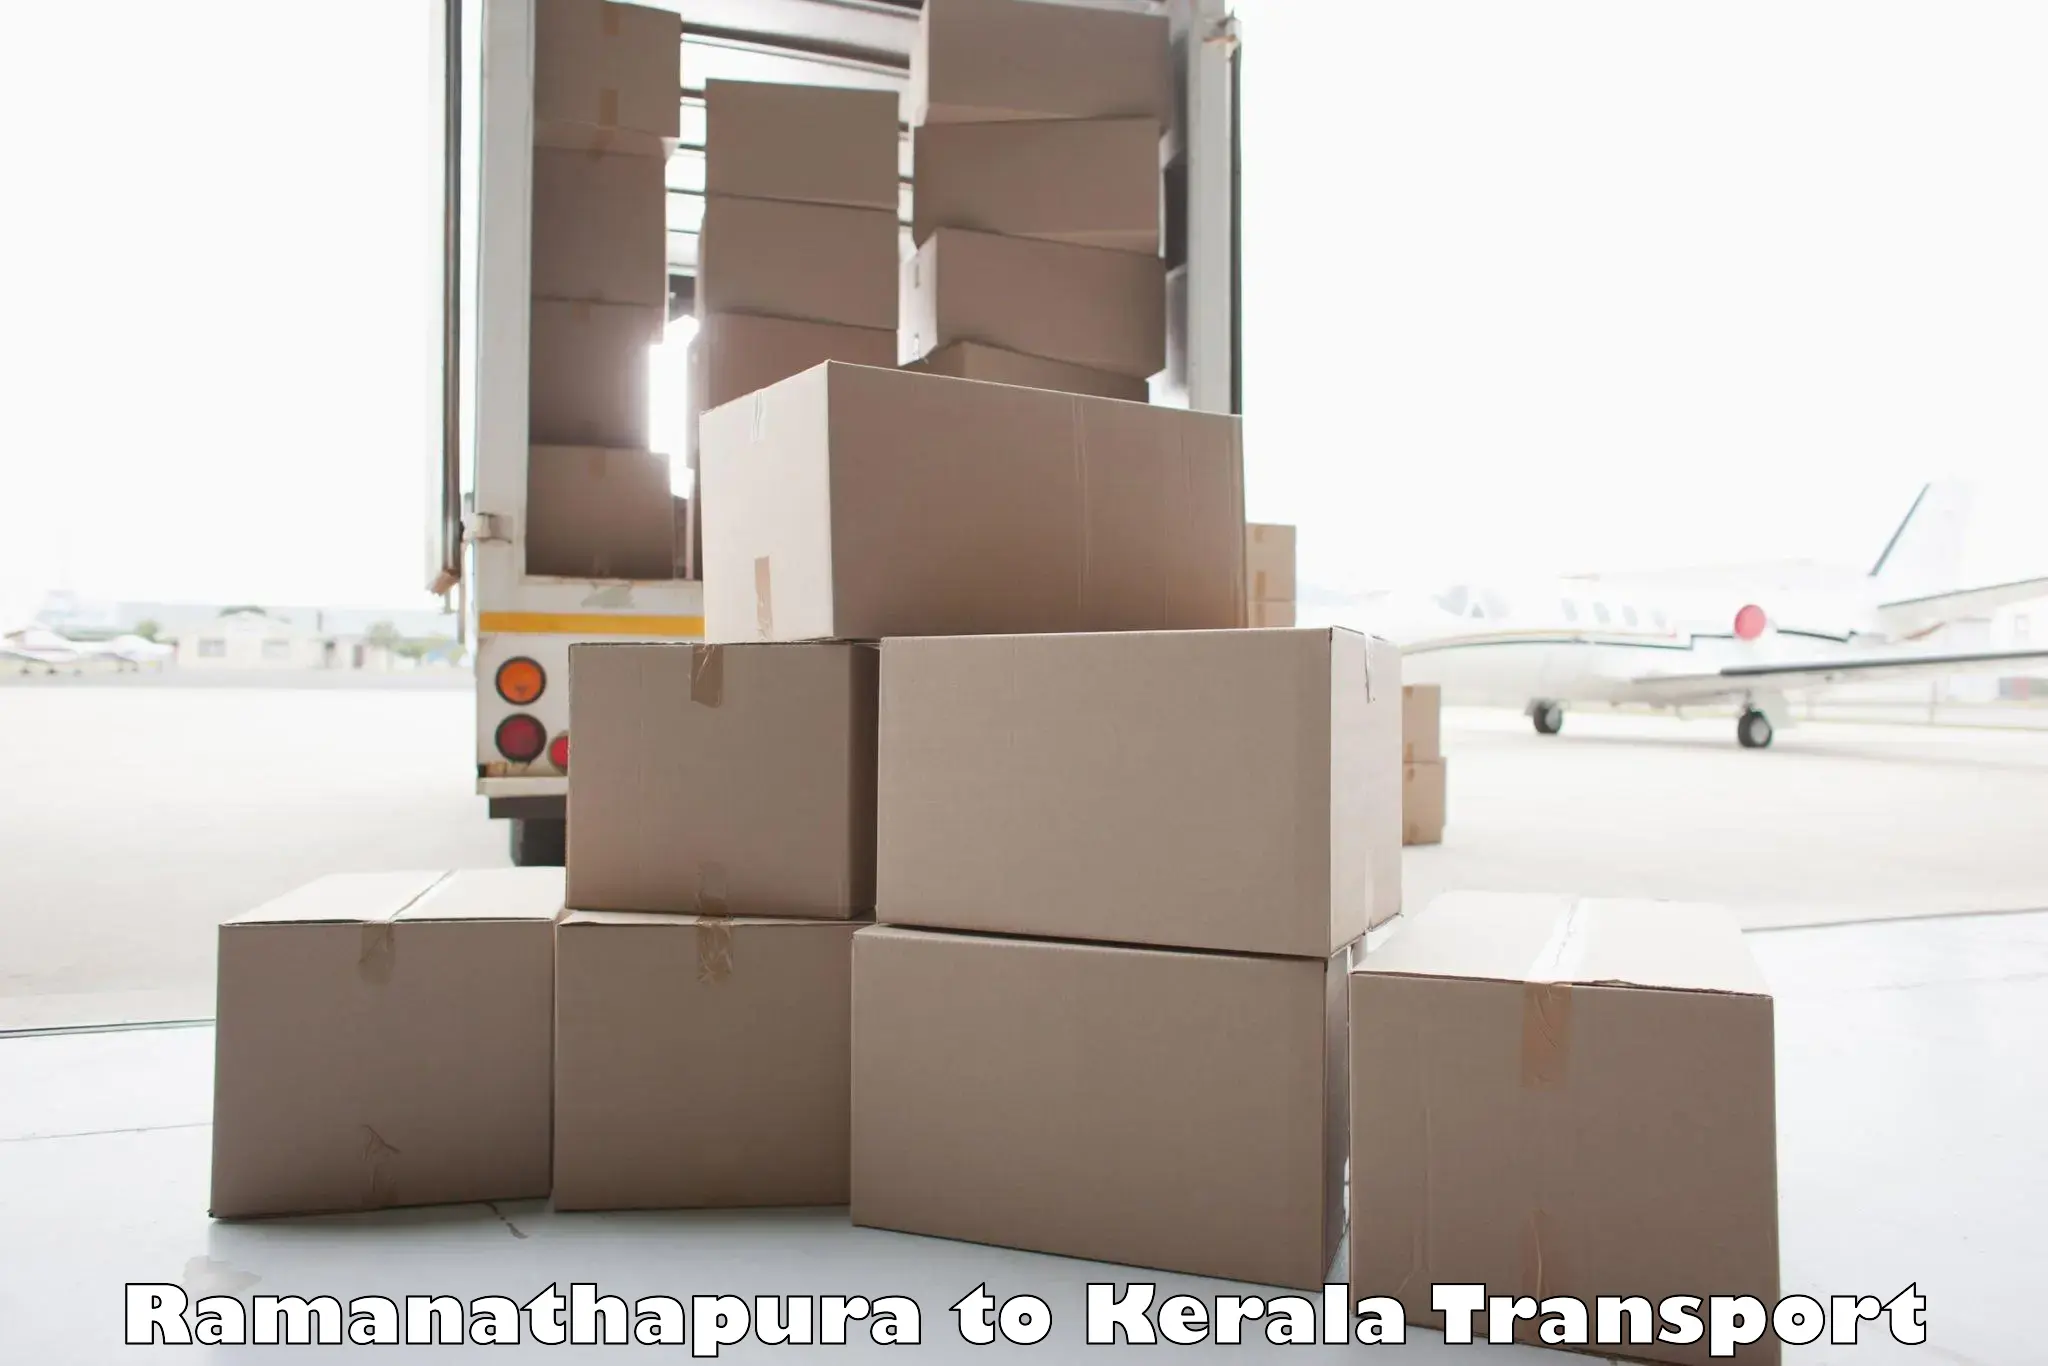 Transportation services Ramanathapura to Panayathamparamba